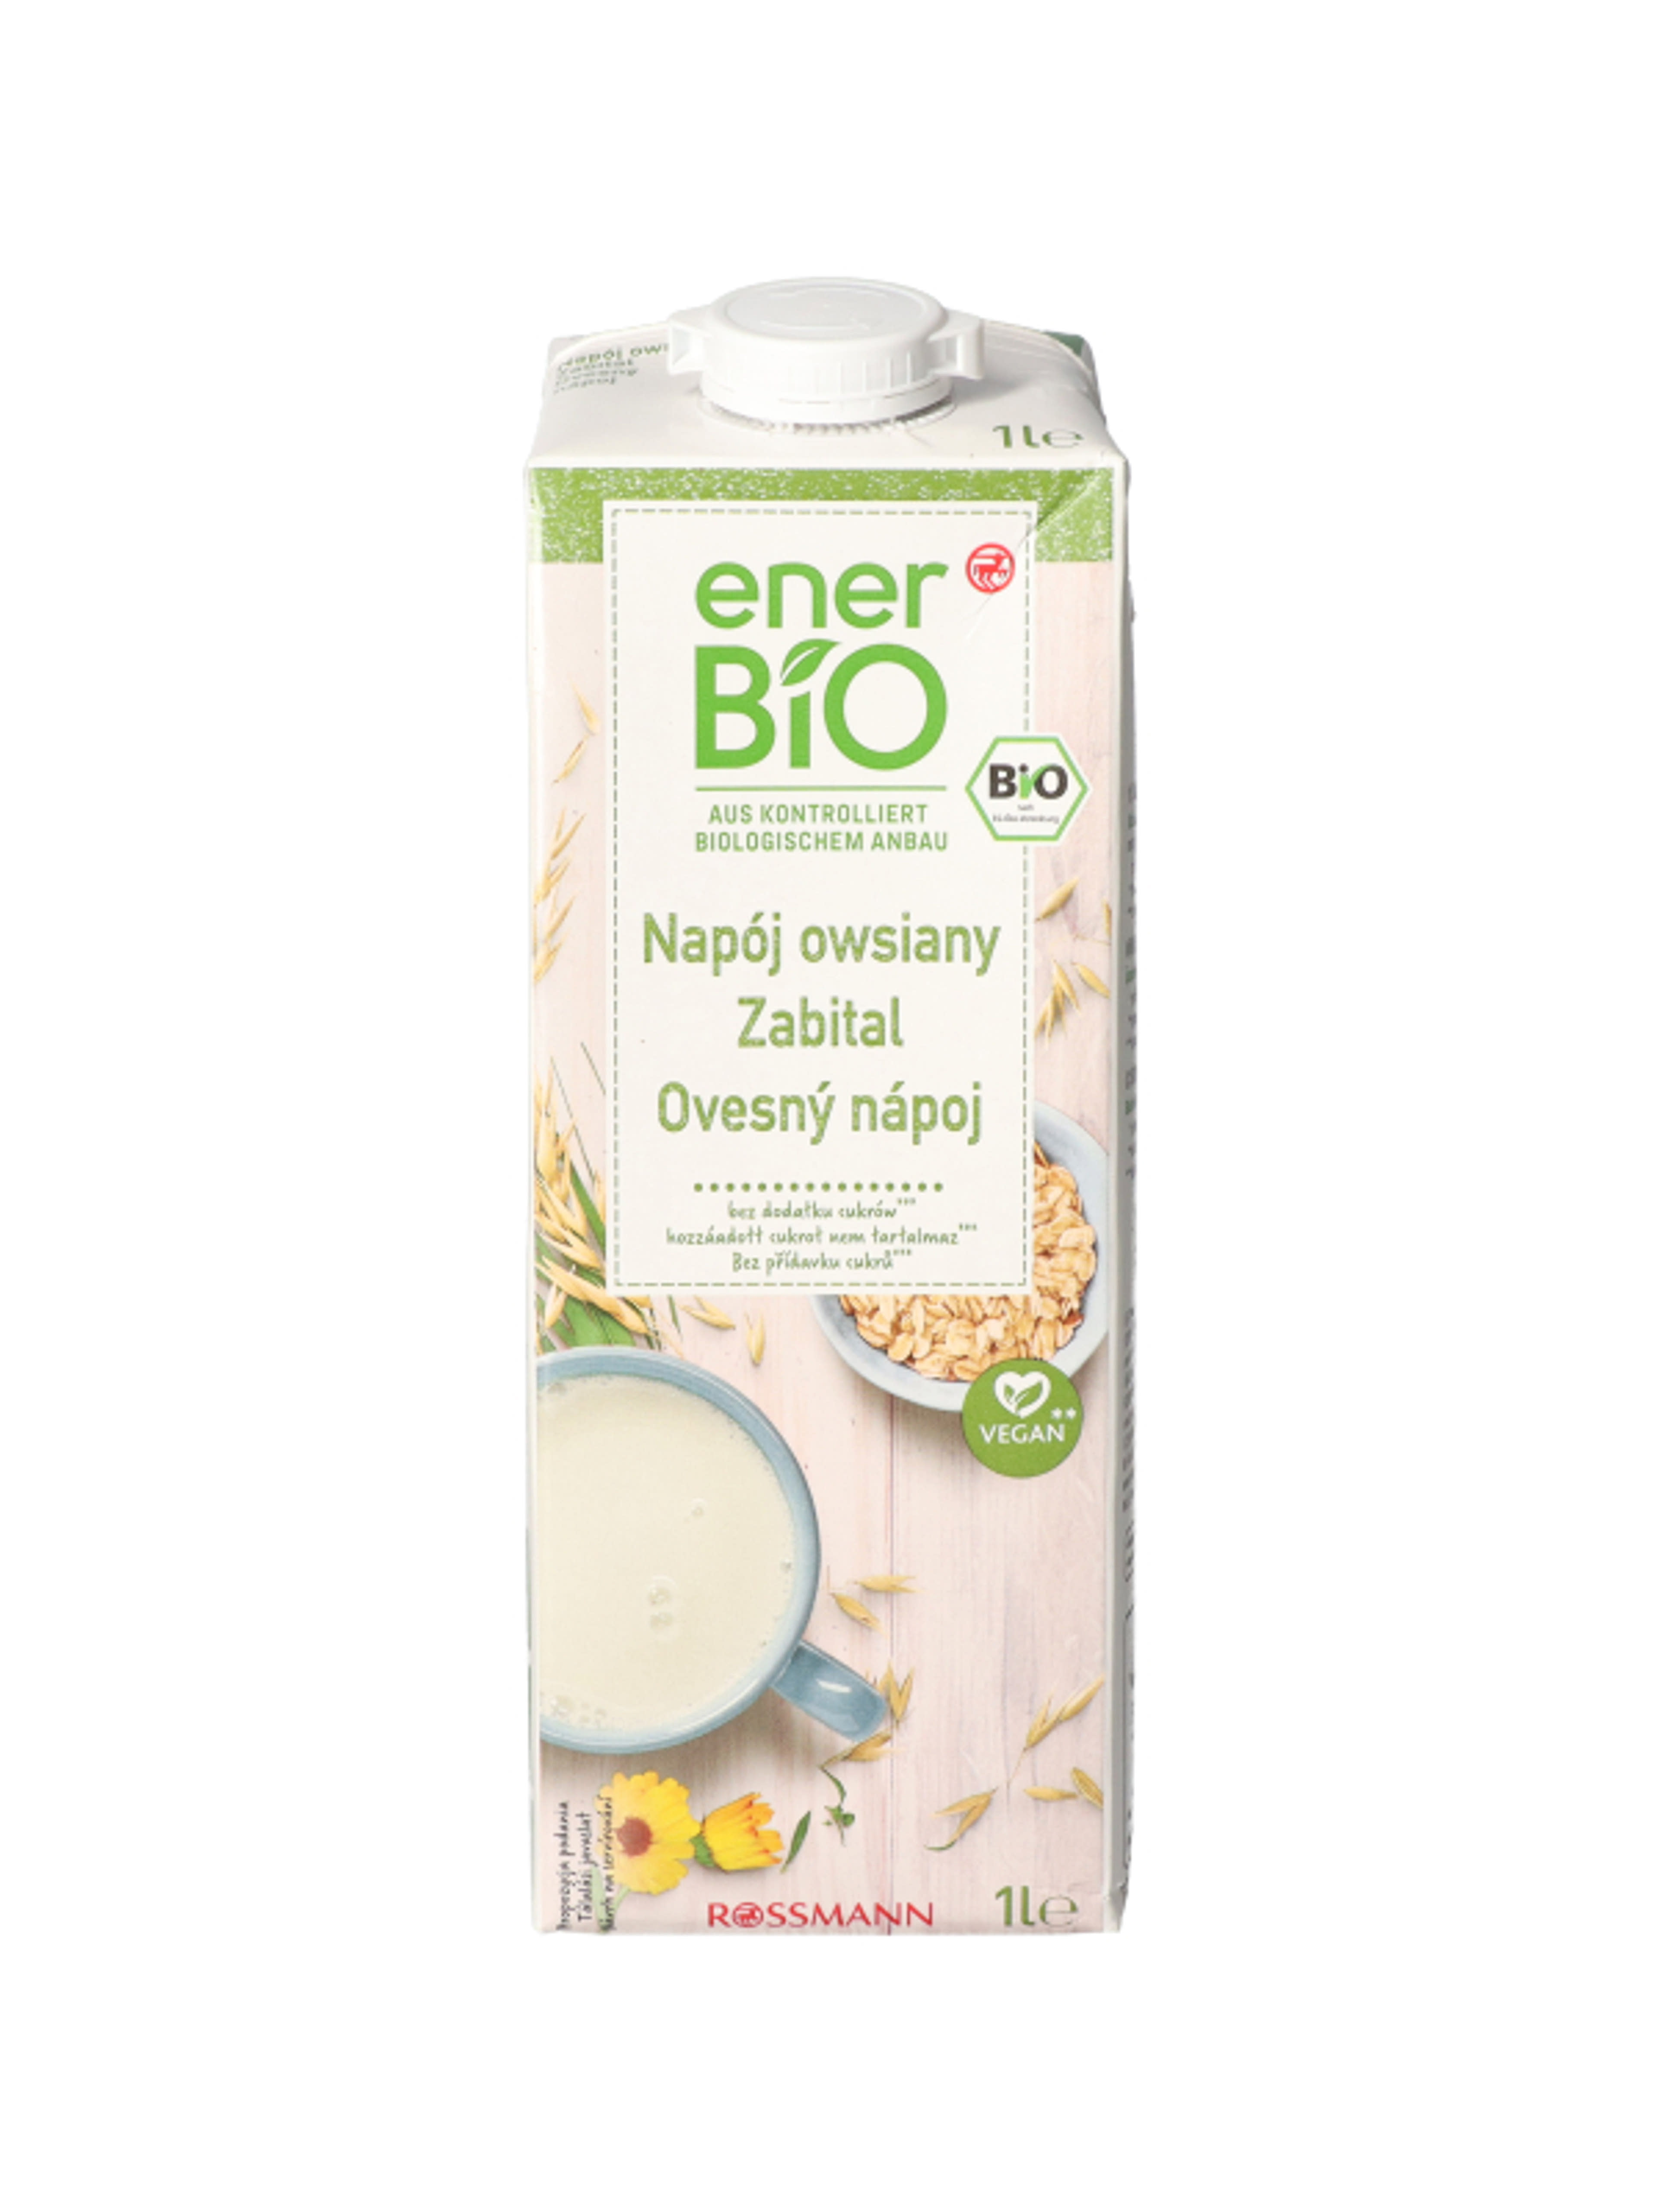 enerBio Zabital - 1 l
hozzáadott cukrot nem tartalmaz
vegán